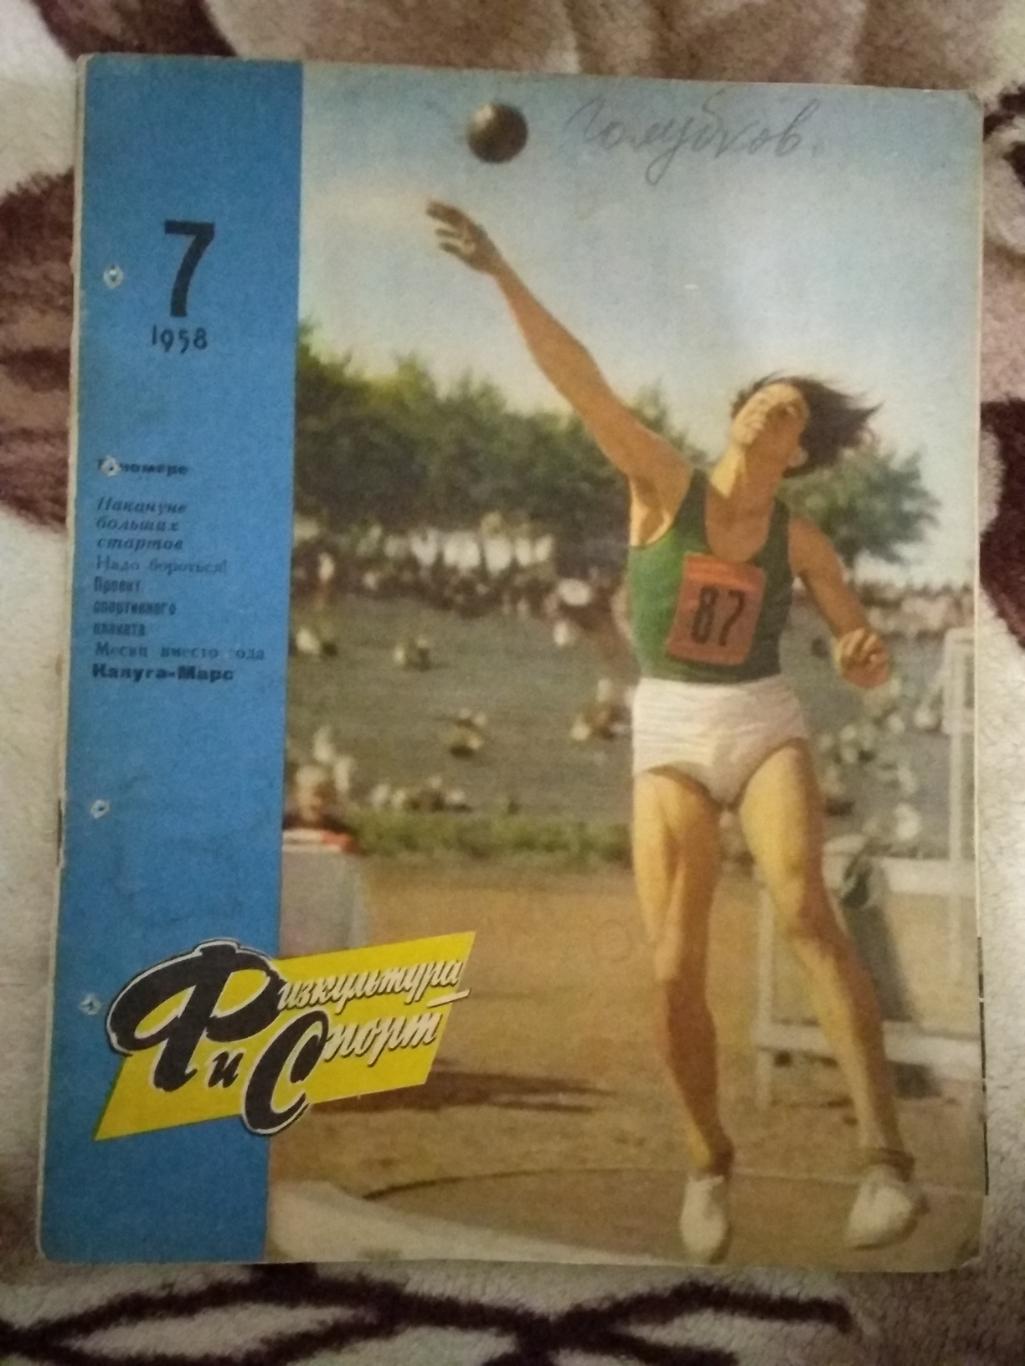 Журнал.Физкультура и спорт № 7 1958 г. (ФиС).